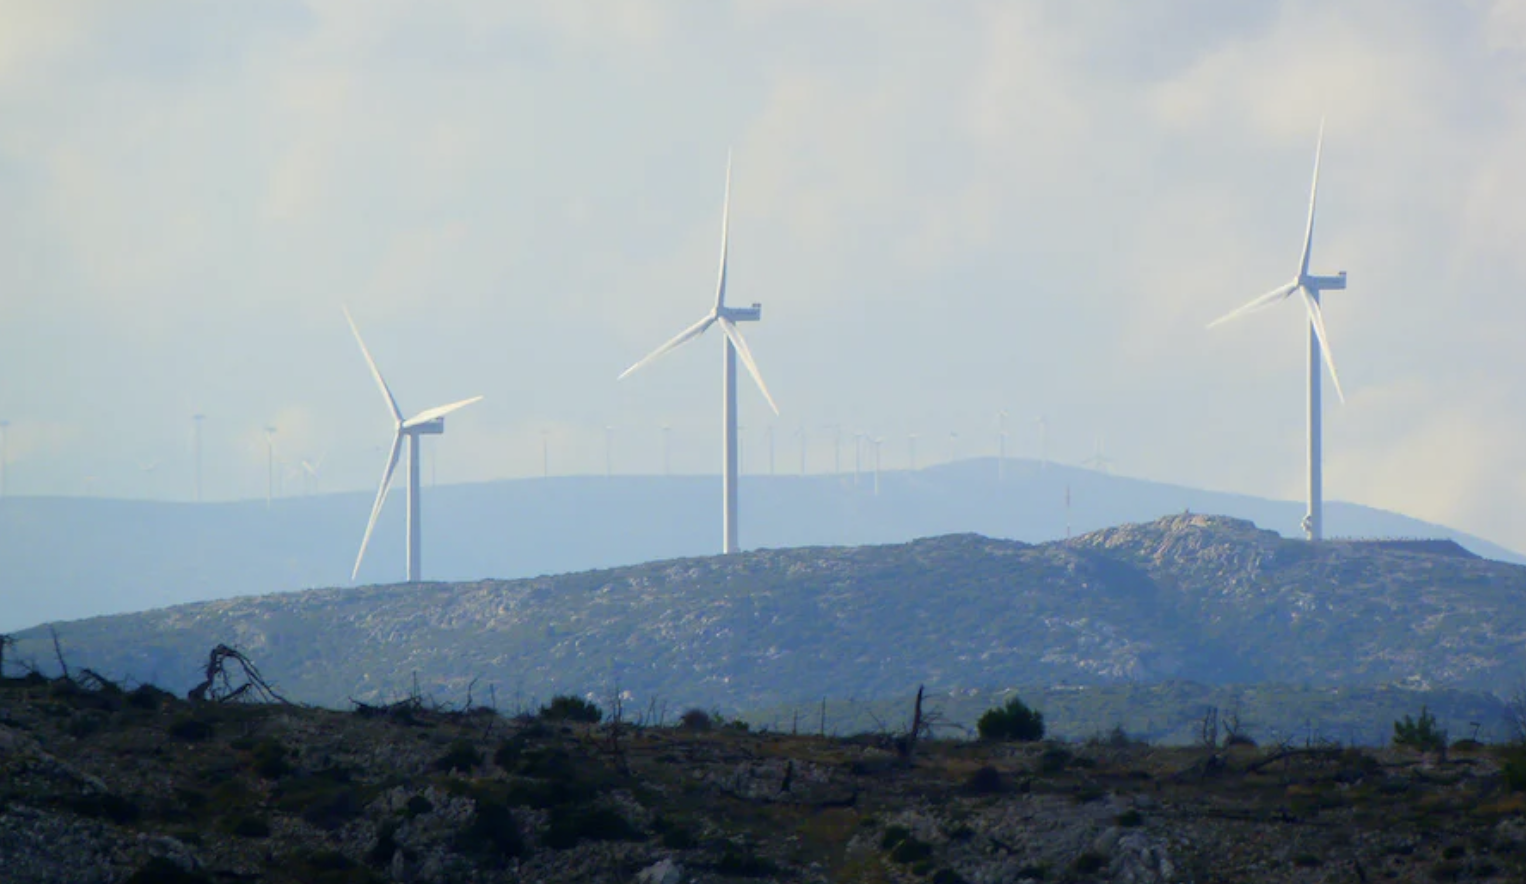 Windmills on a hill